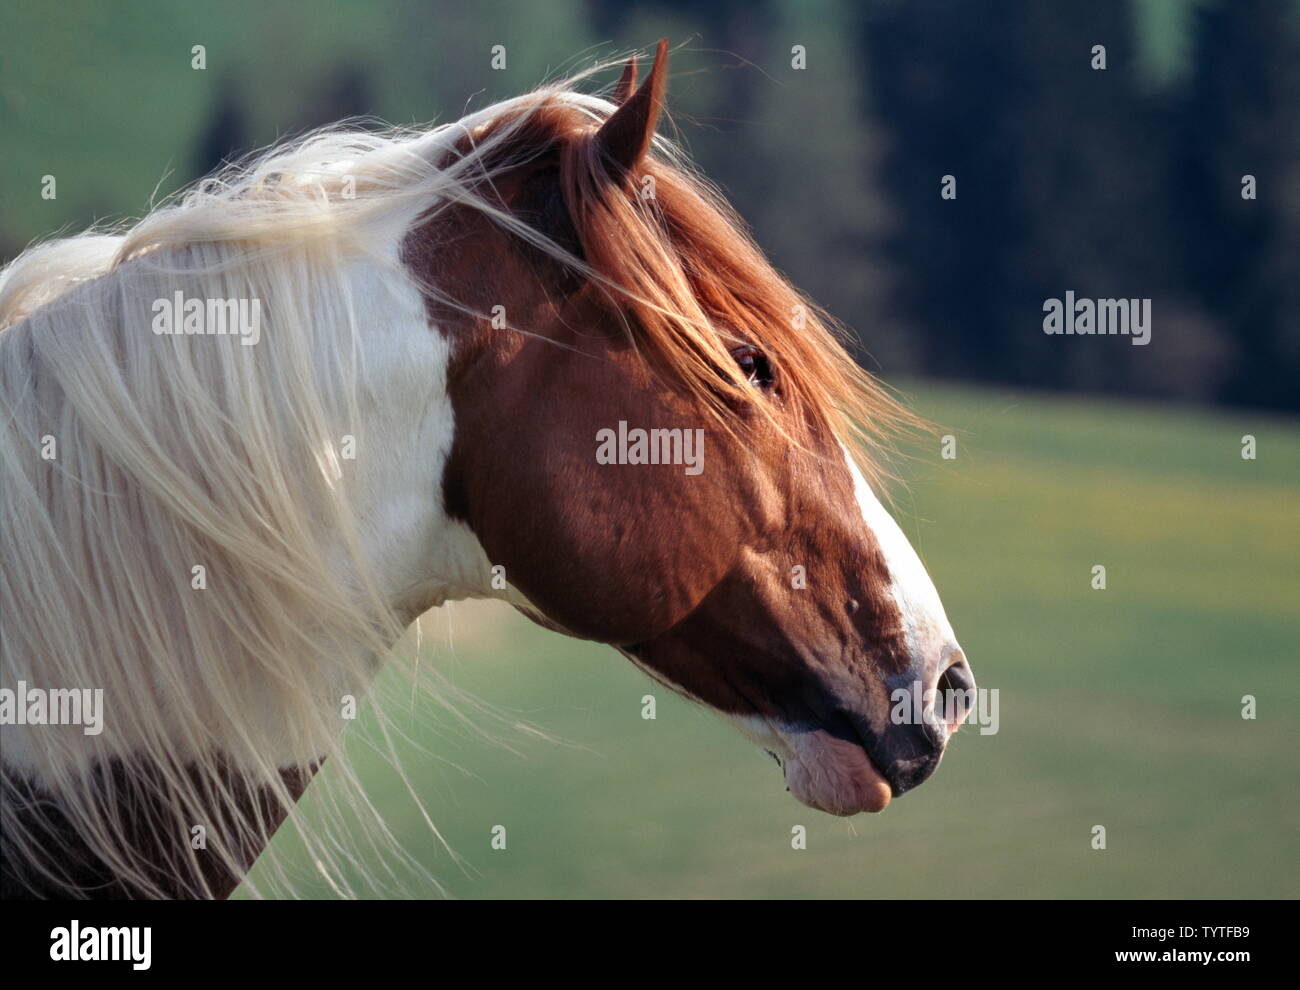 PAINT HORSE Stockfoto